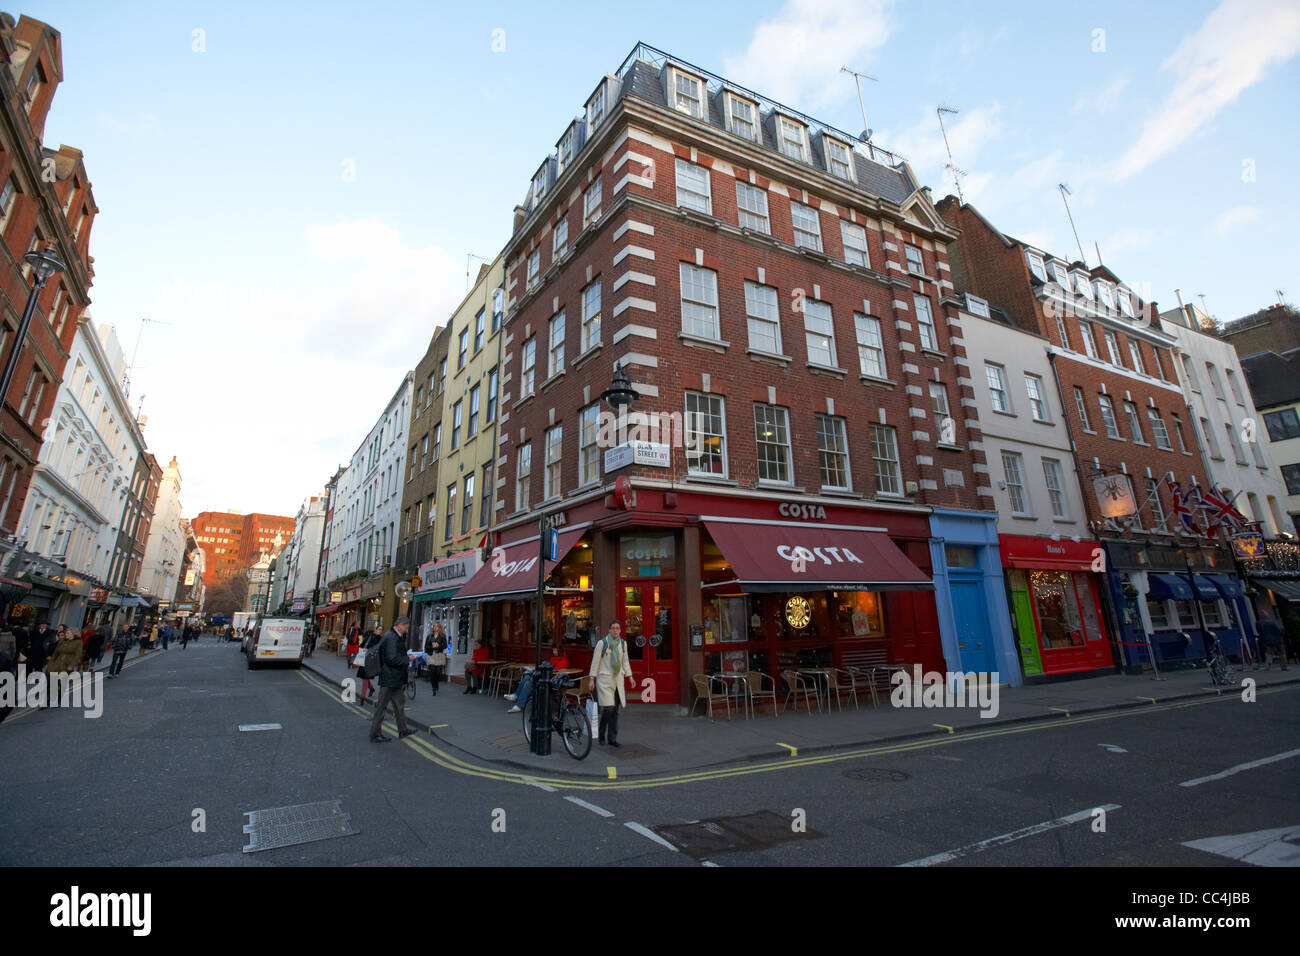 Jonction de Old Compton Street et Dean Street à Soho Londres Angleterre Royaume-Uni Royaume-Uni Banque D'Images